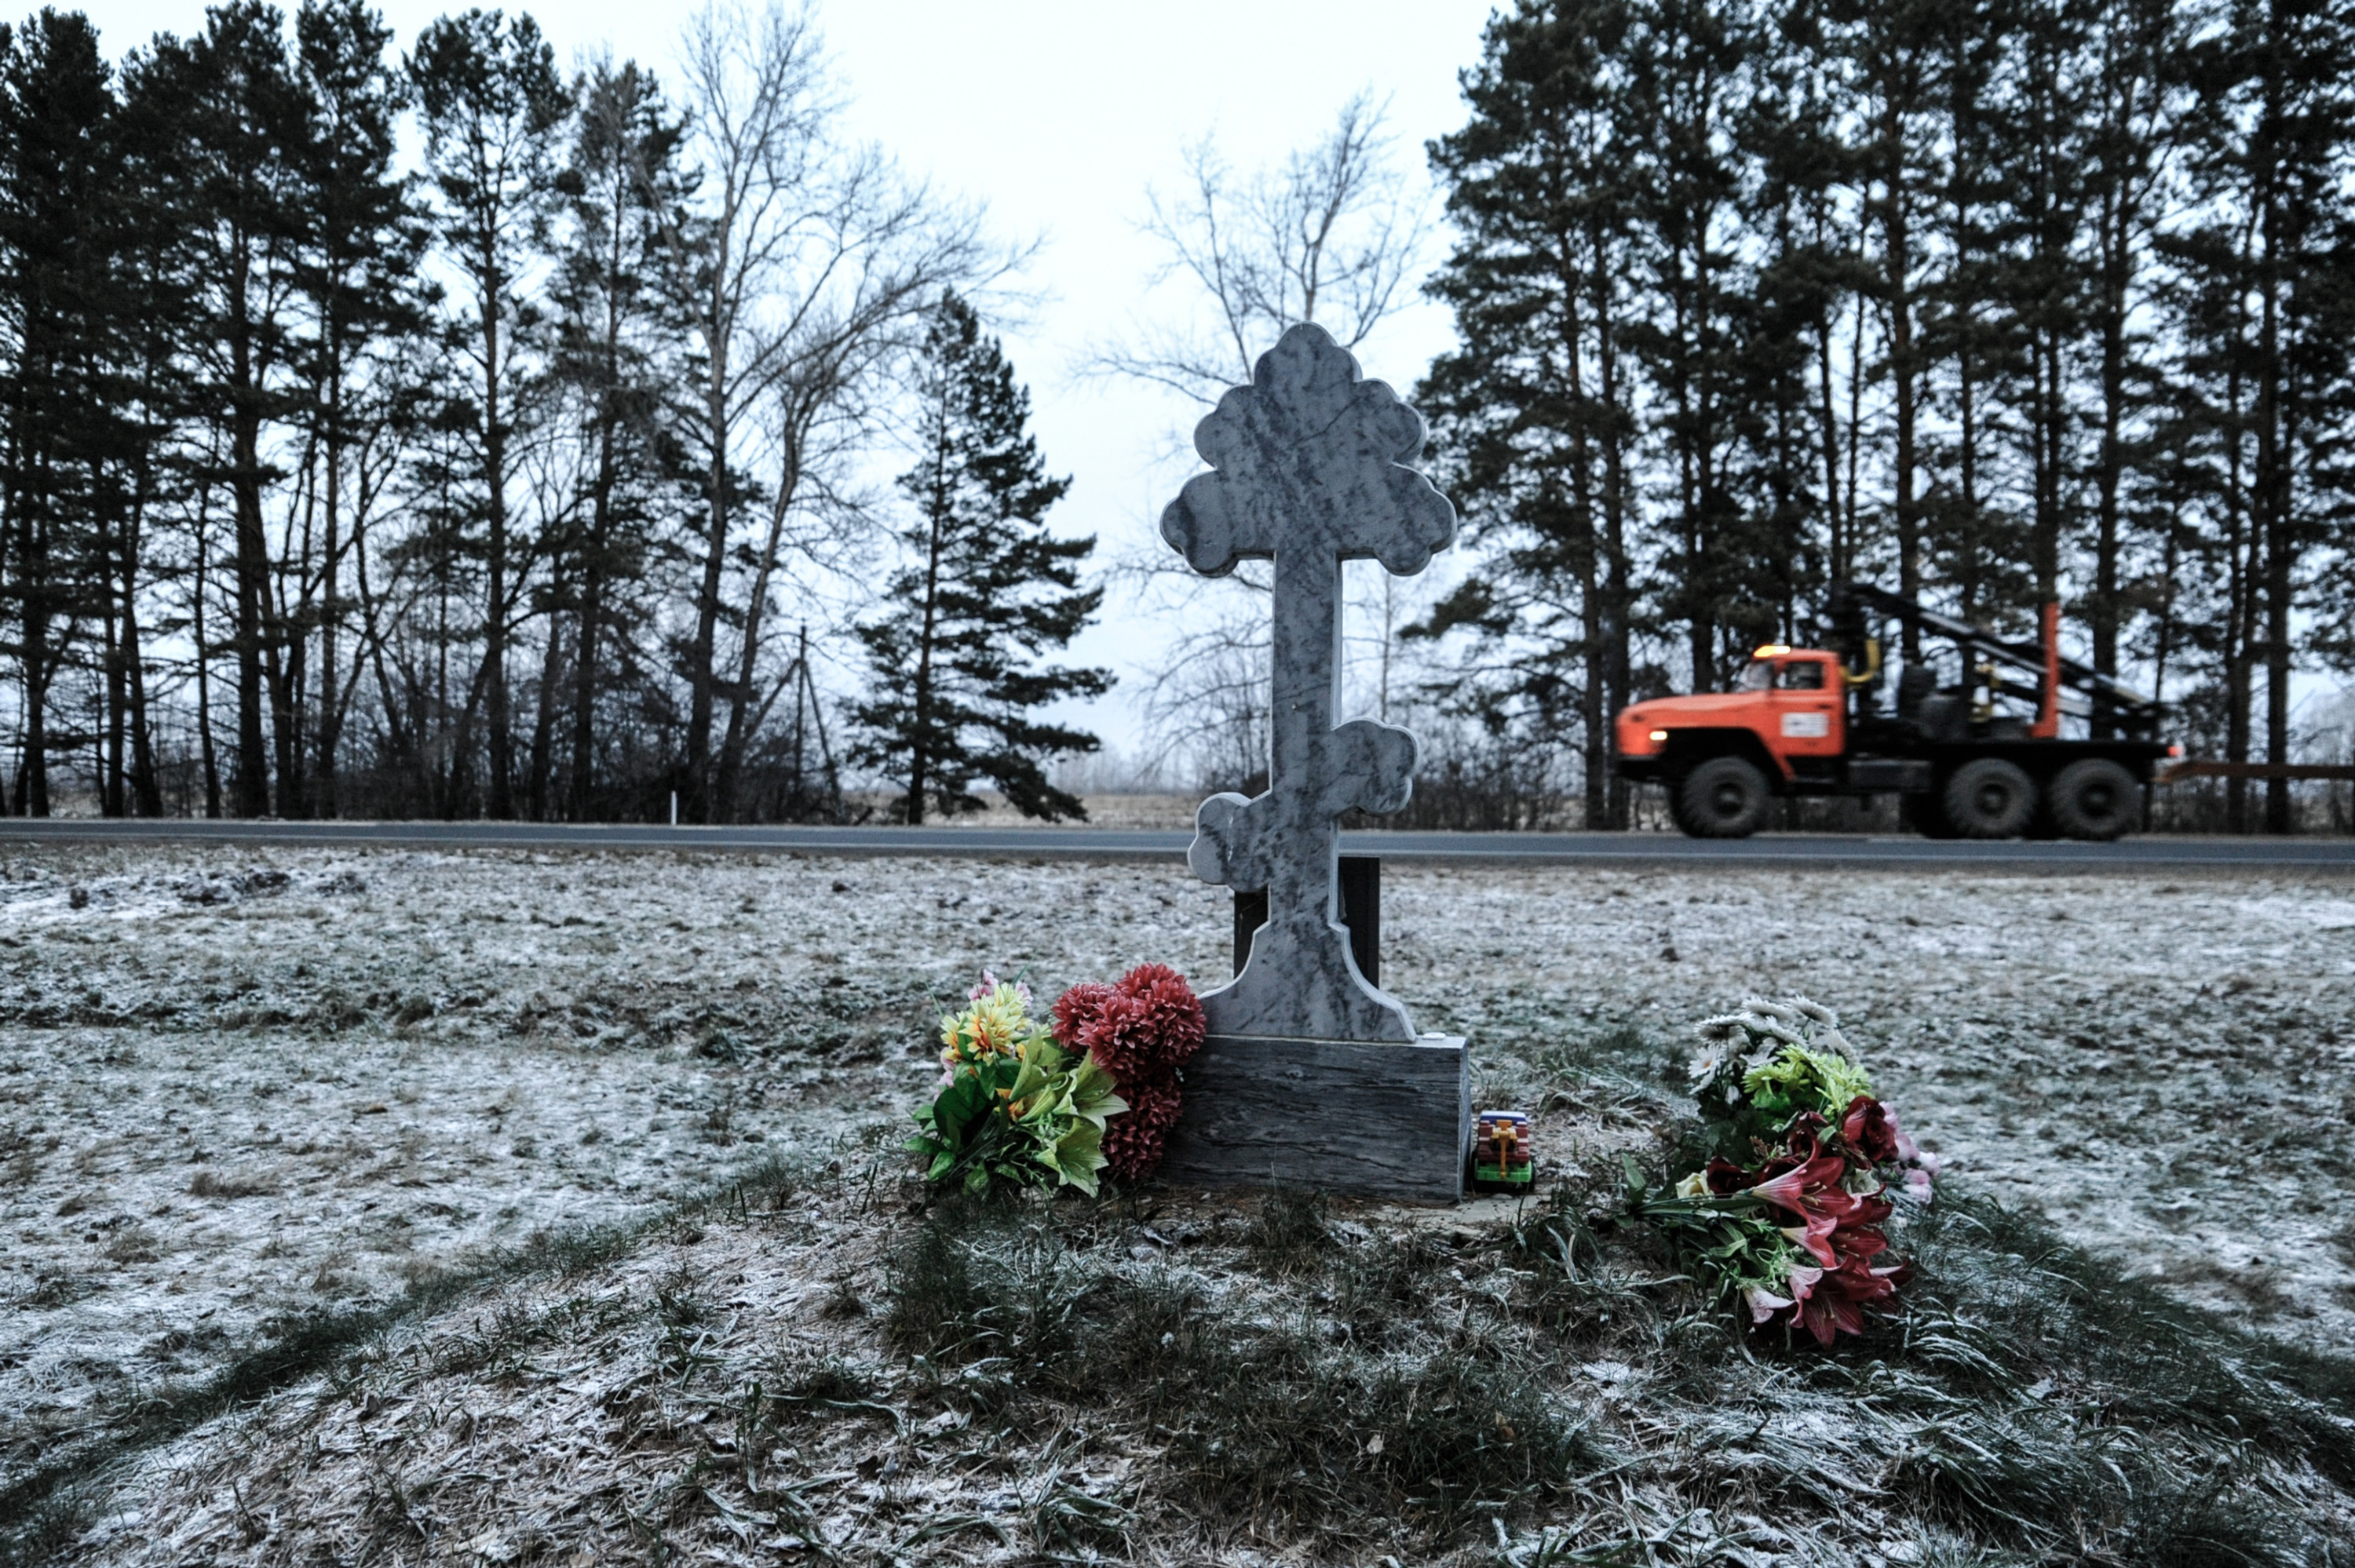 У памятника стоит машинка, лежат искусственные цветы и конфеты. Видно, что за надгробием семилетнему ребенку ухаживают. Родные или проезжающие мимо водители — неизвестно